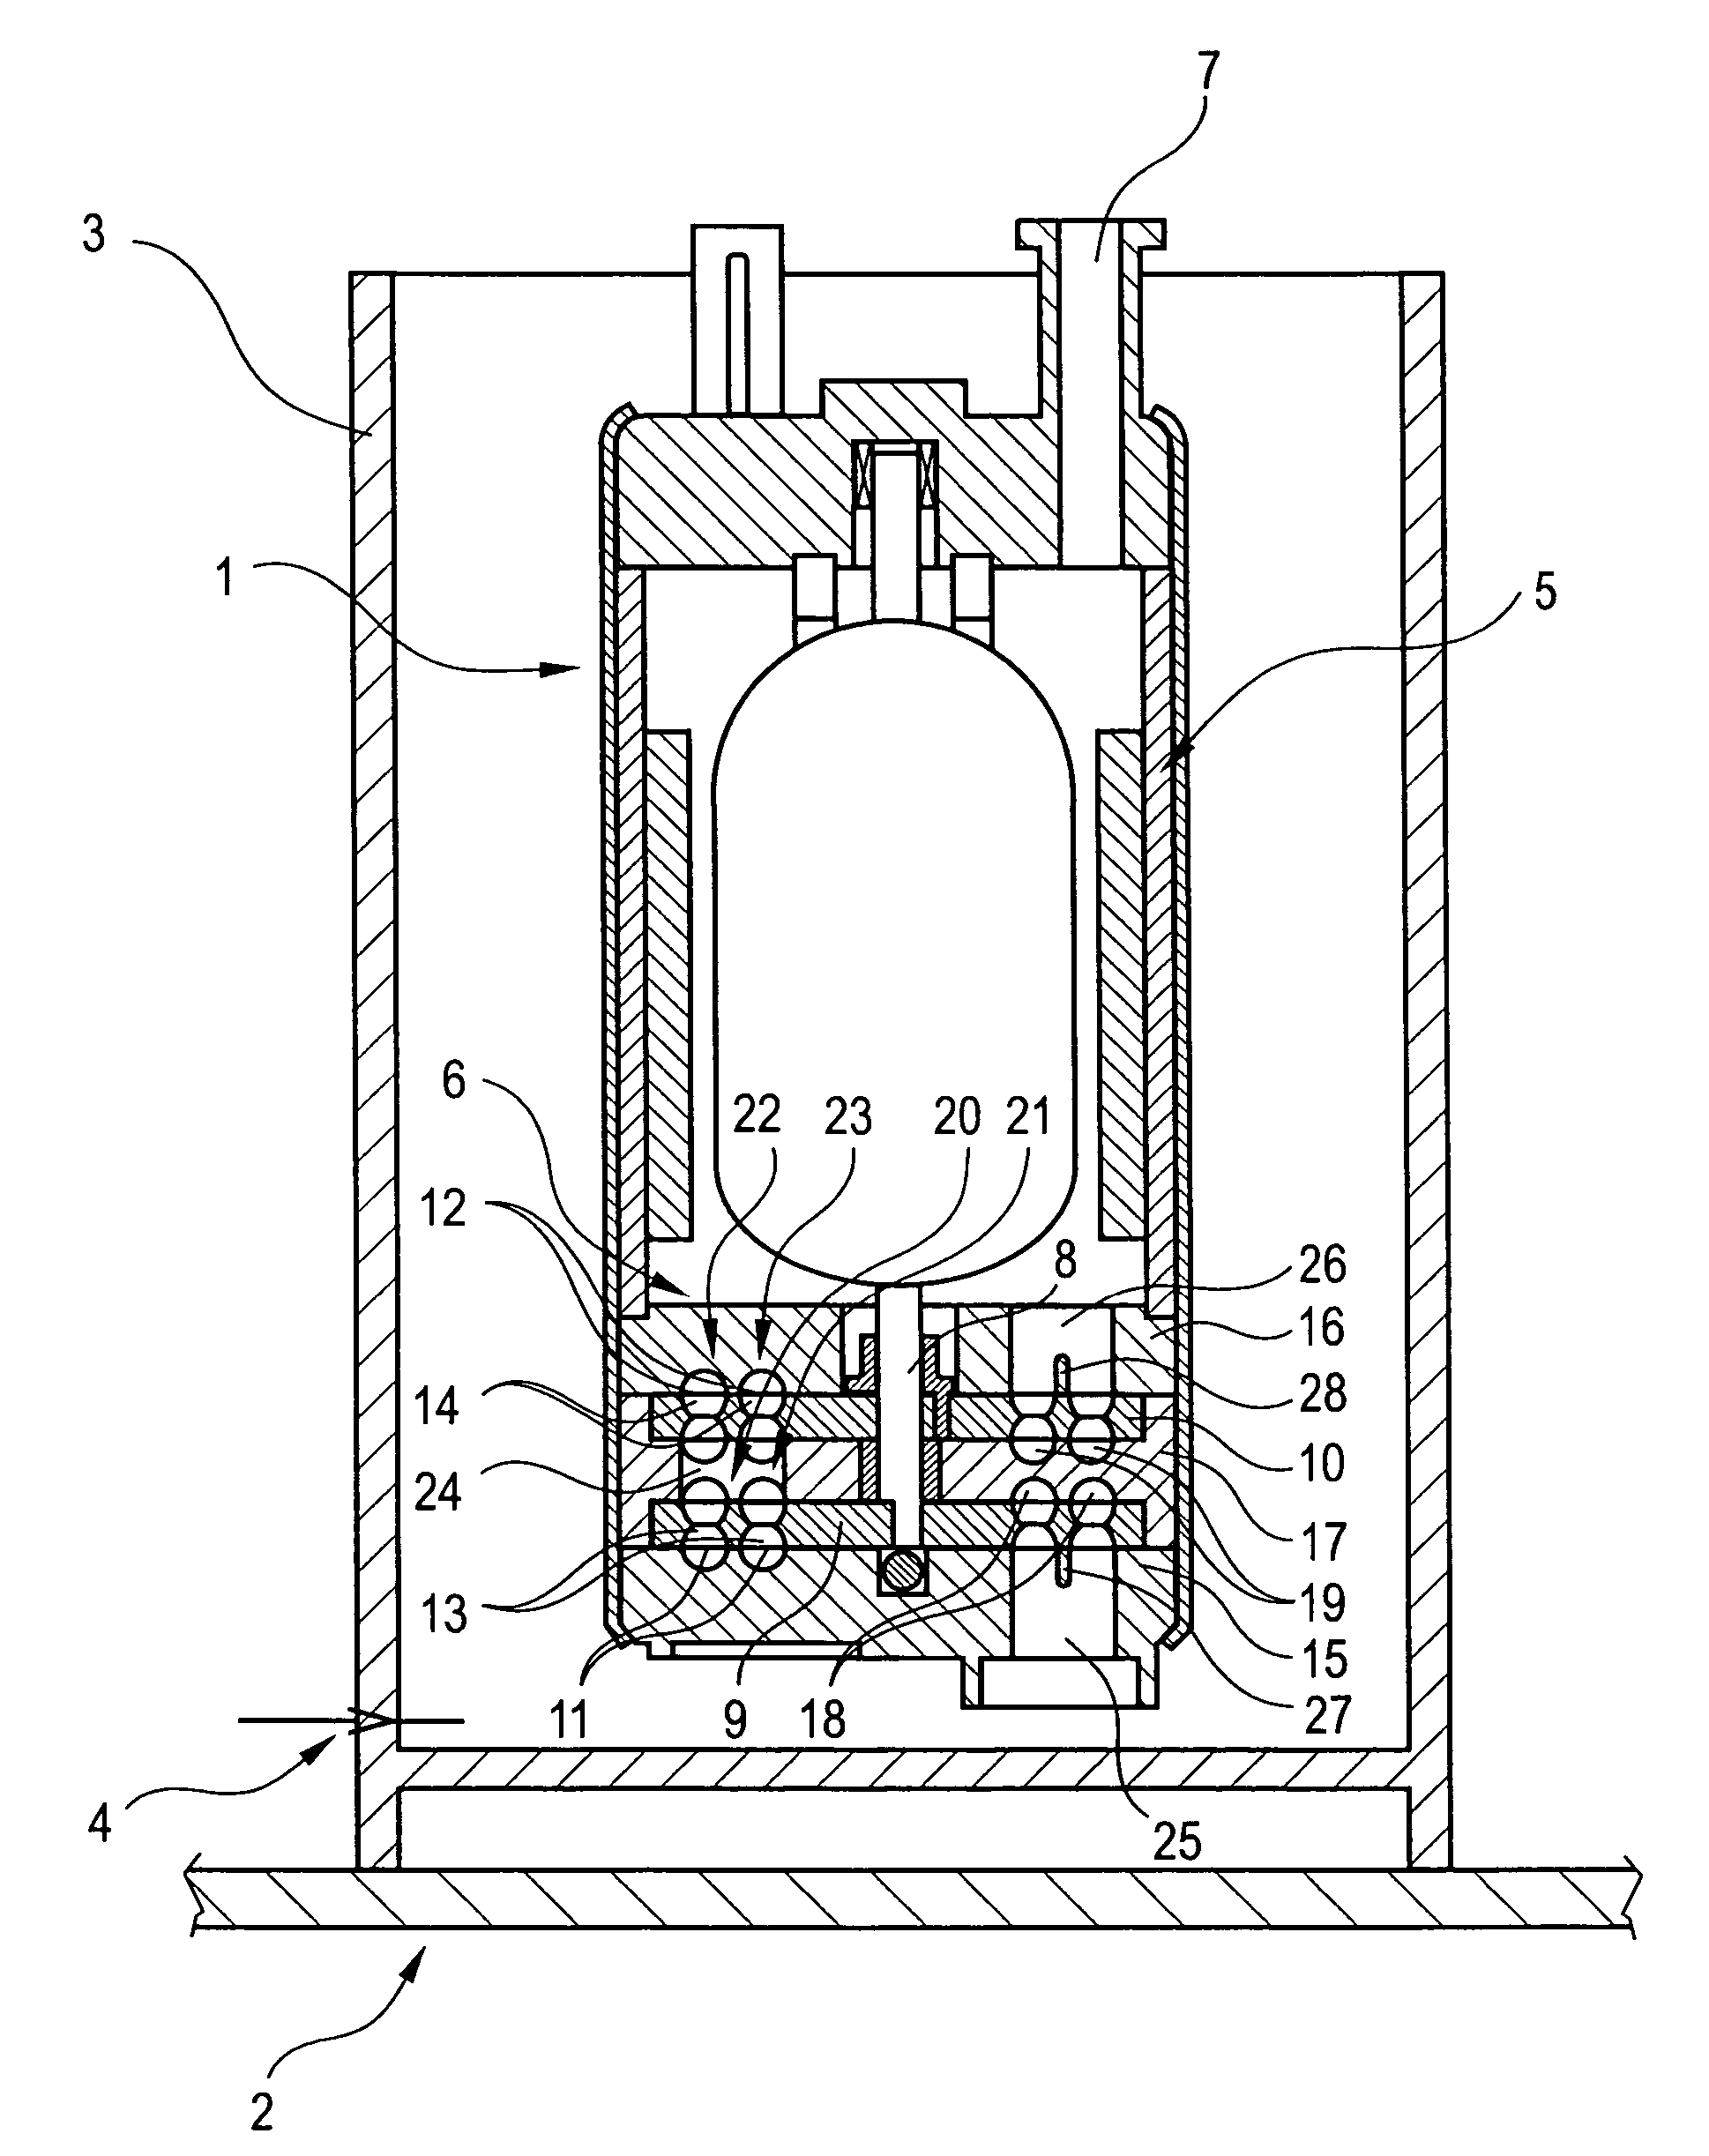 Fuel pump for a fuel tank